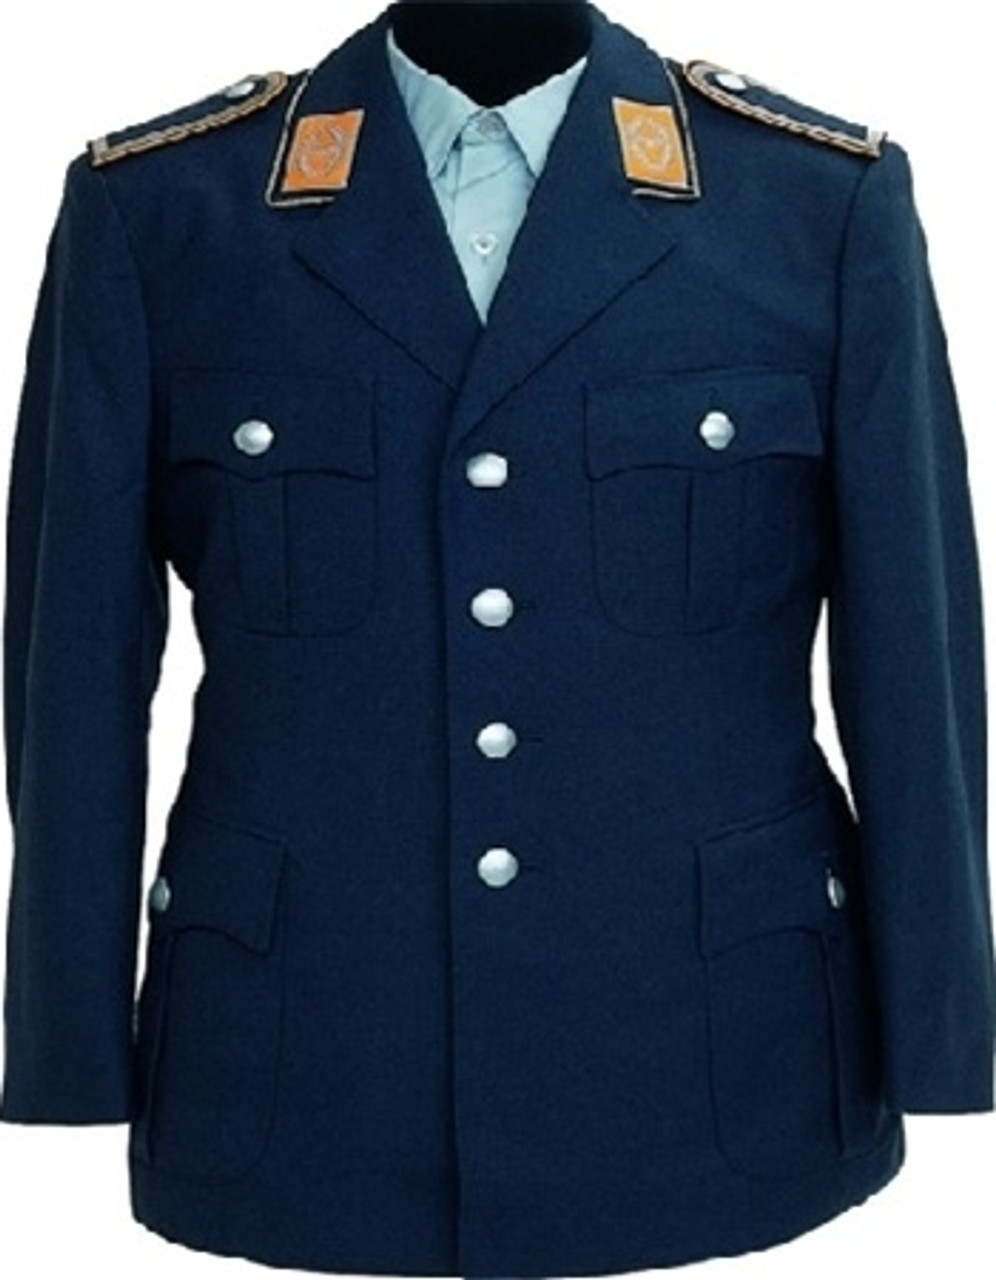 West German AF Uniform Jacket - Used from Hessen Surplus